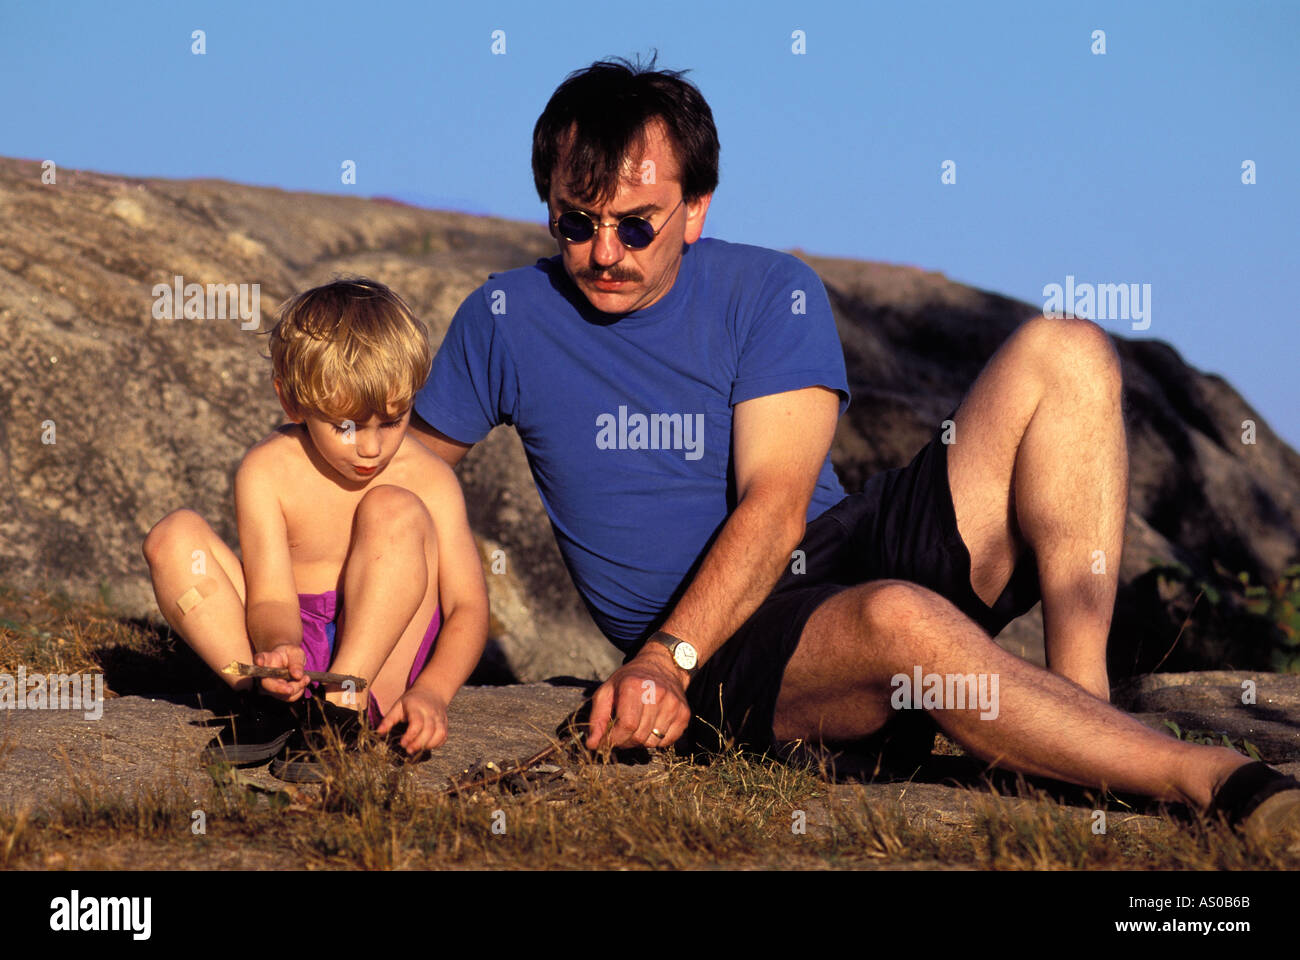 Padre e hijo, tocando en roca en vacaciones, Connecticut, EE.UU. Foto de stock